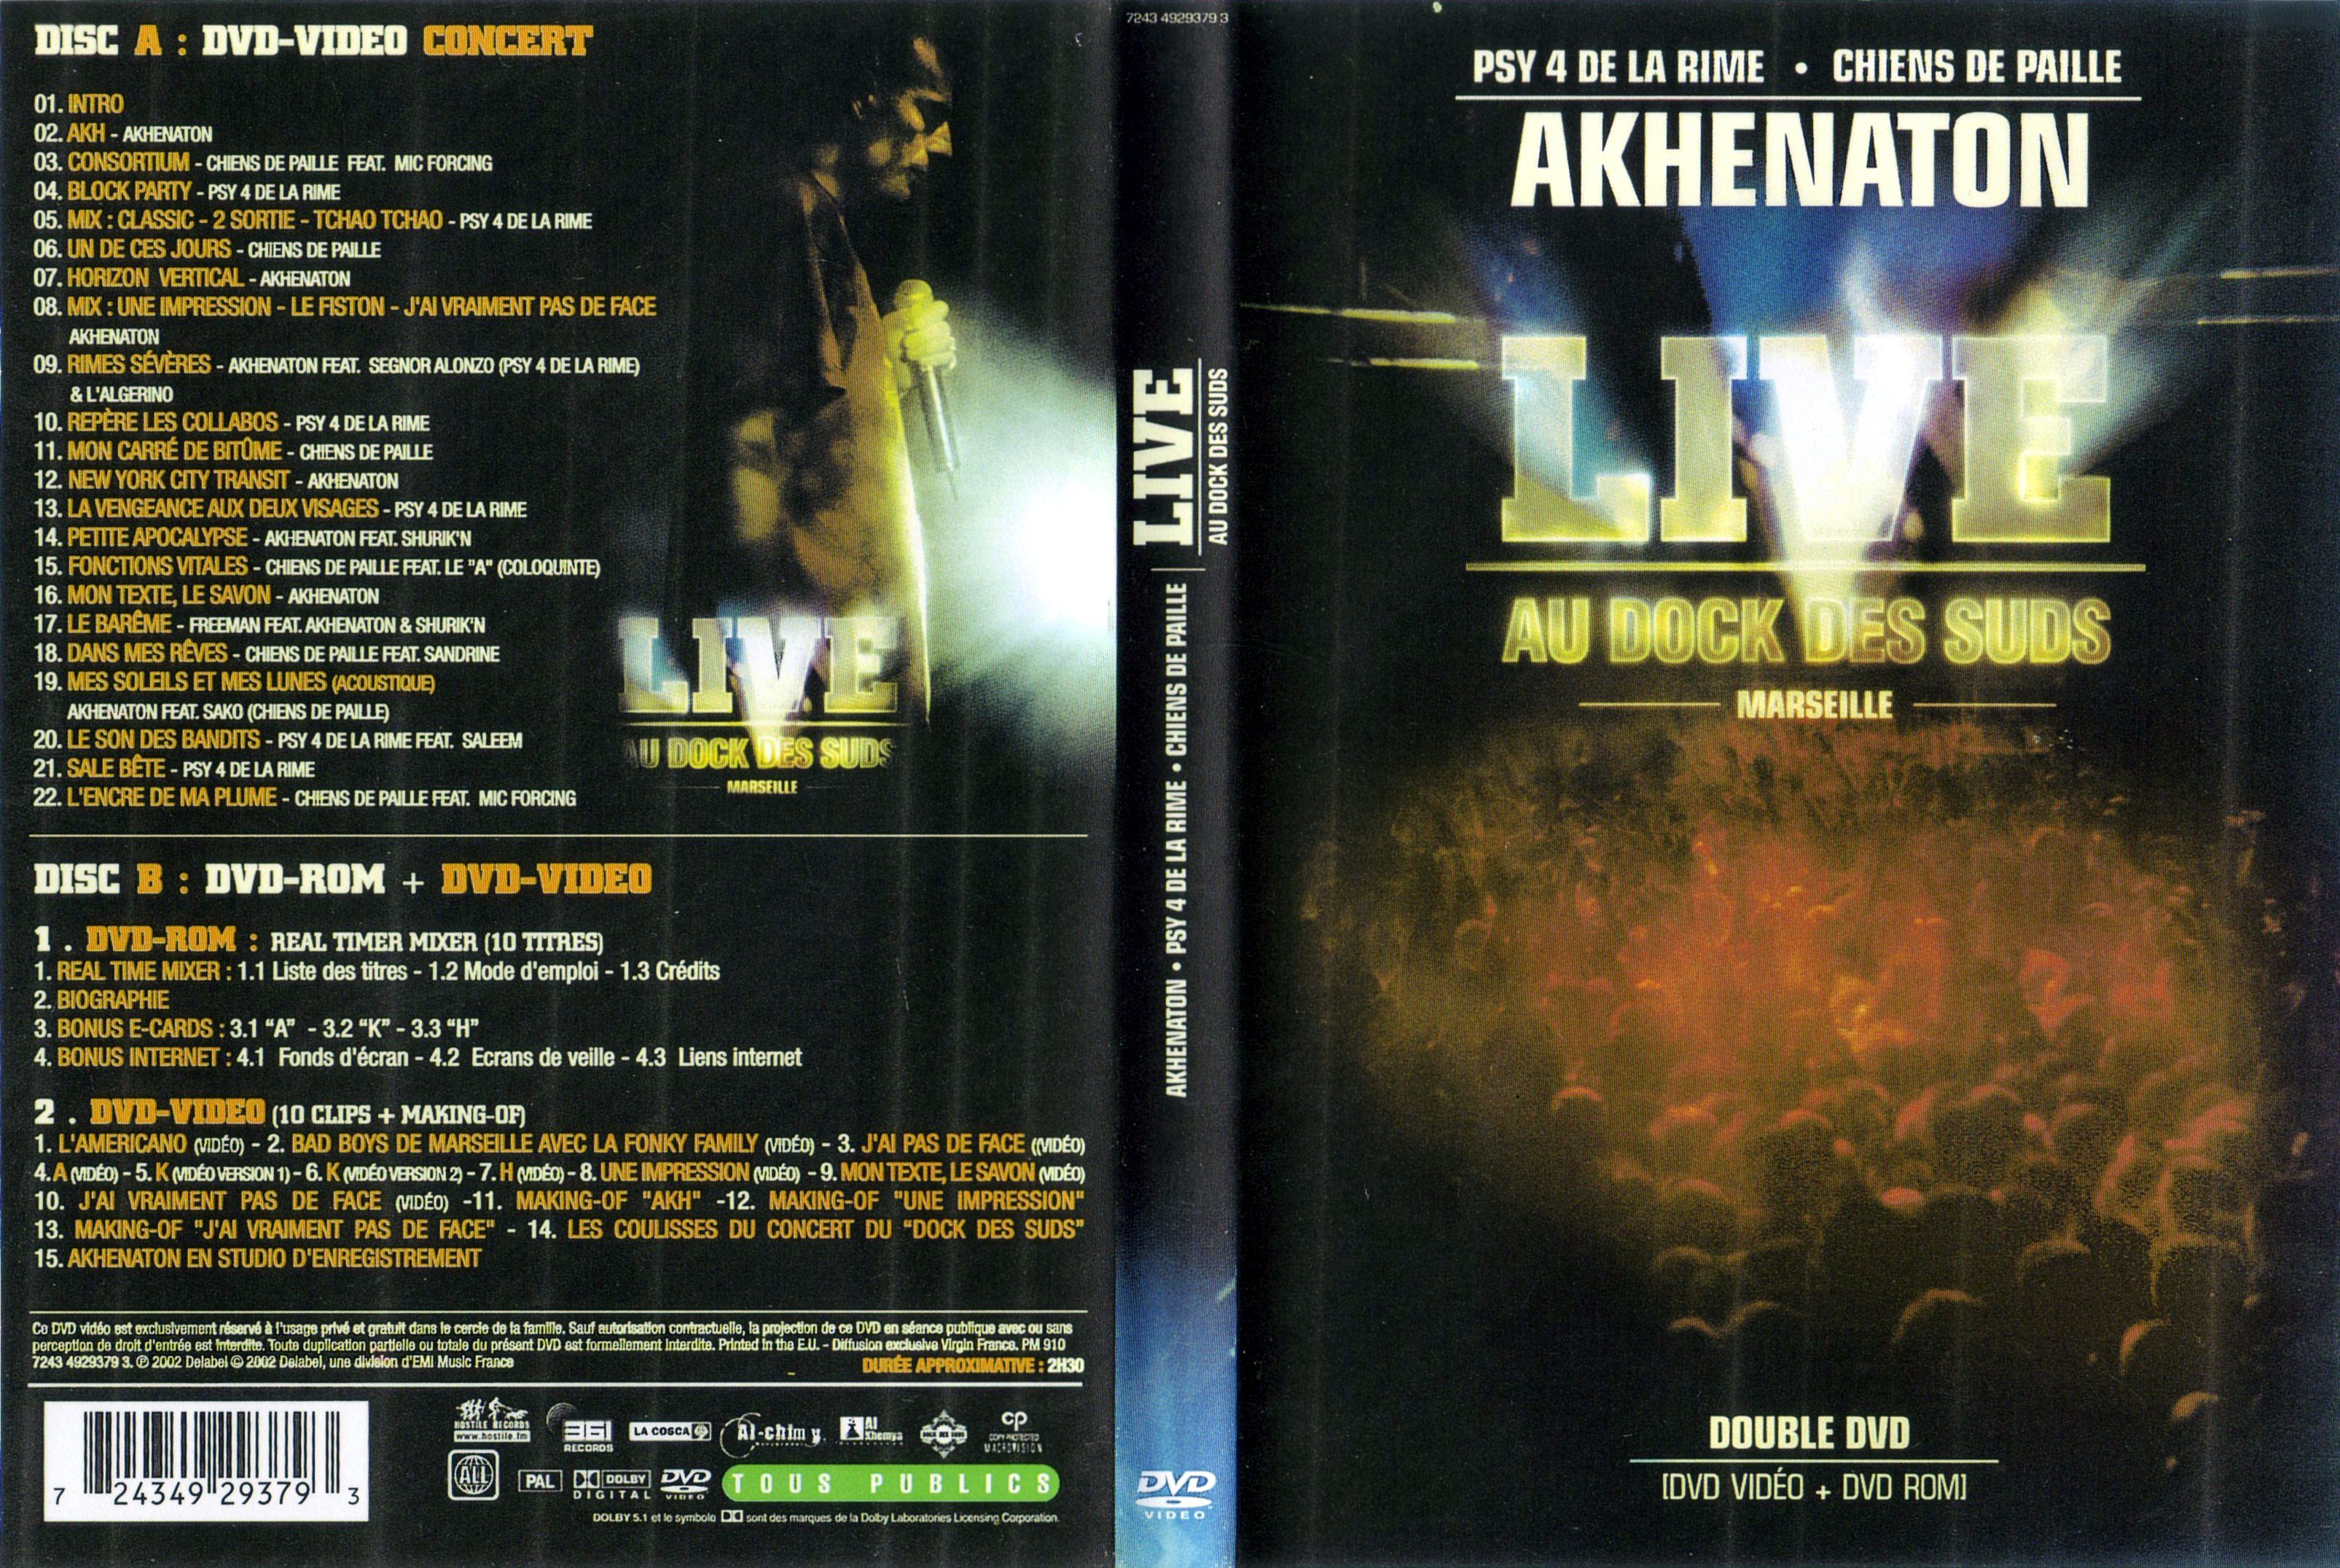 Jaquette DVD Akhenaton live au dock des suds